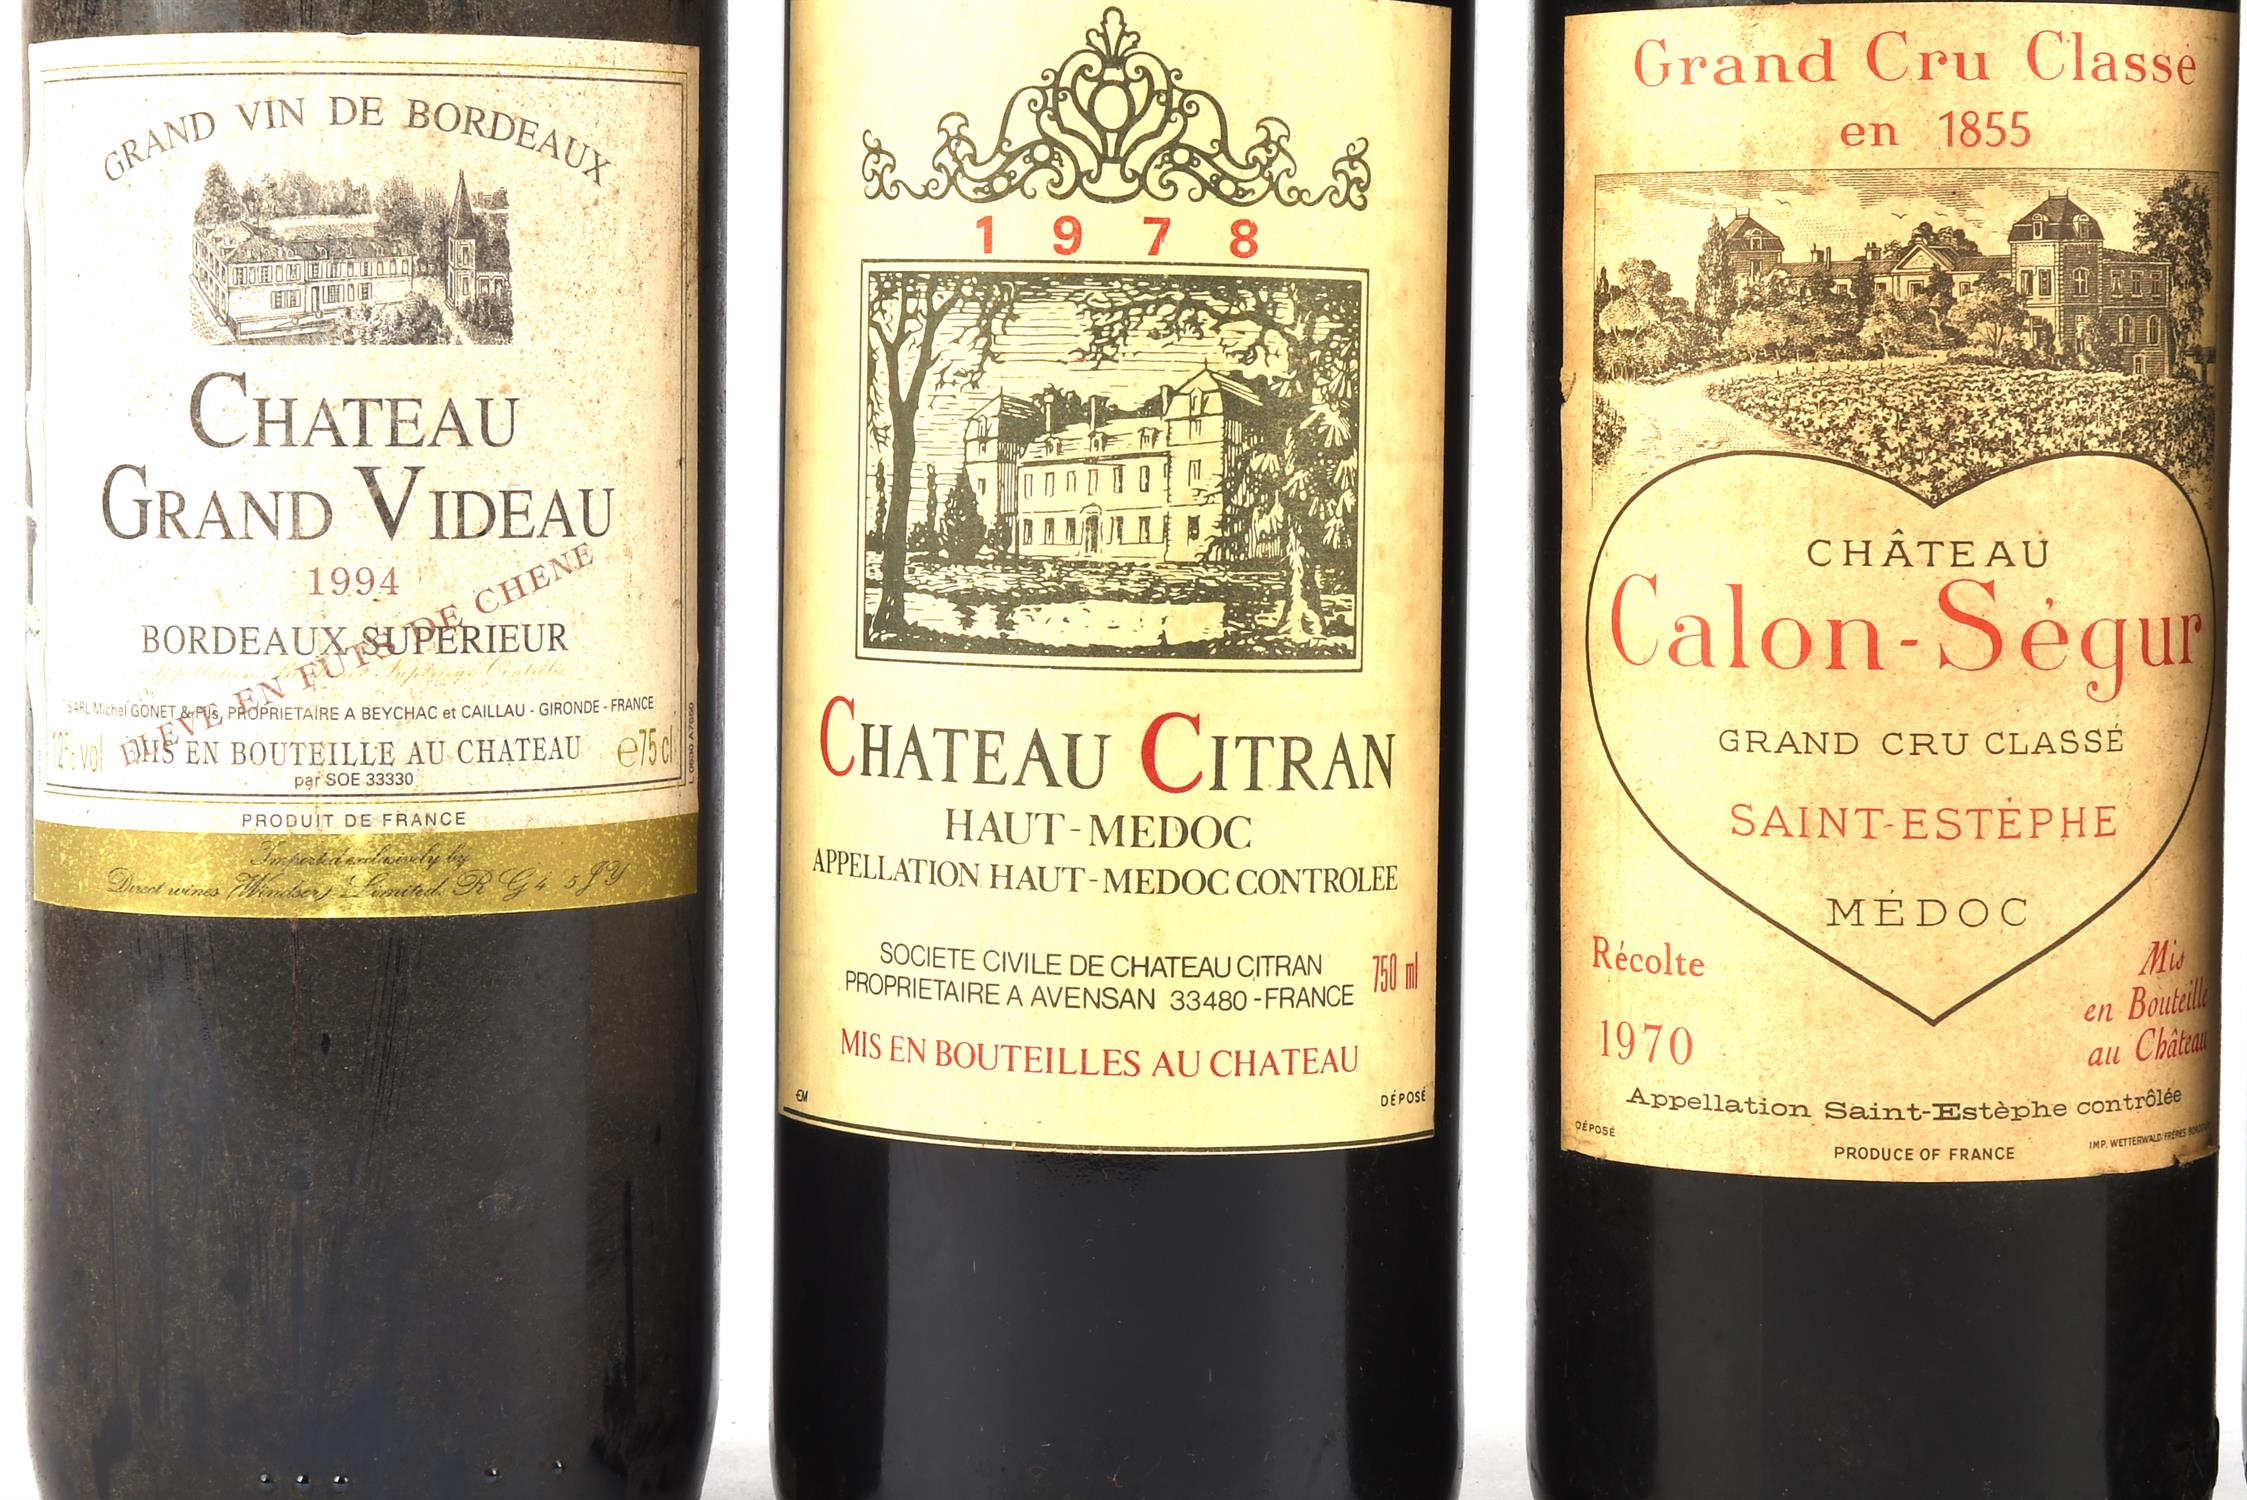 Bordeaux wines, Chateau de la Graves, Cotes de Bourg 1990, three bottles, Chateau Vieux Bonneau - Image 2 of 8